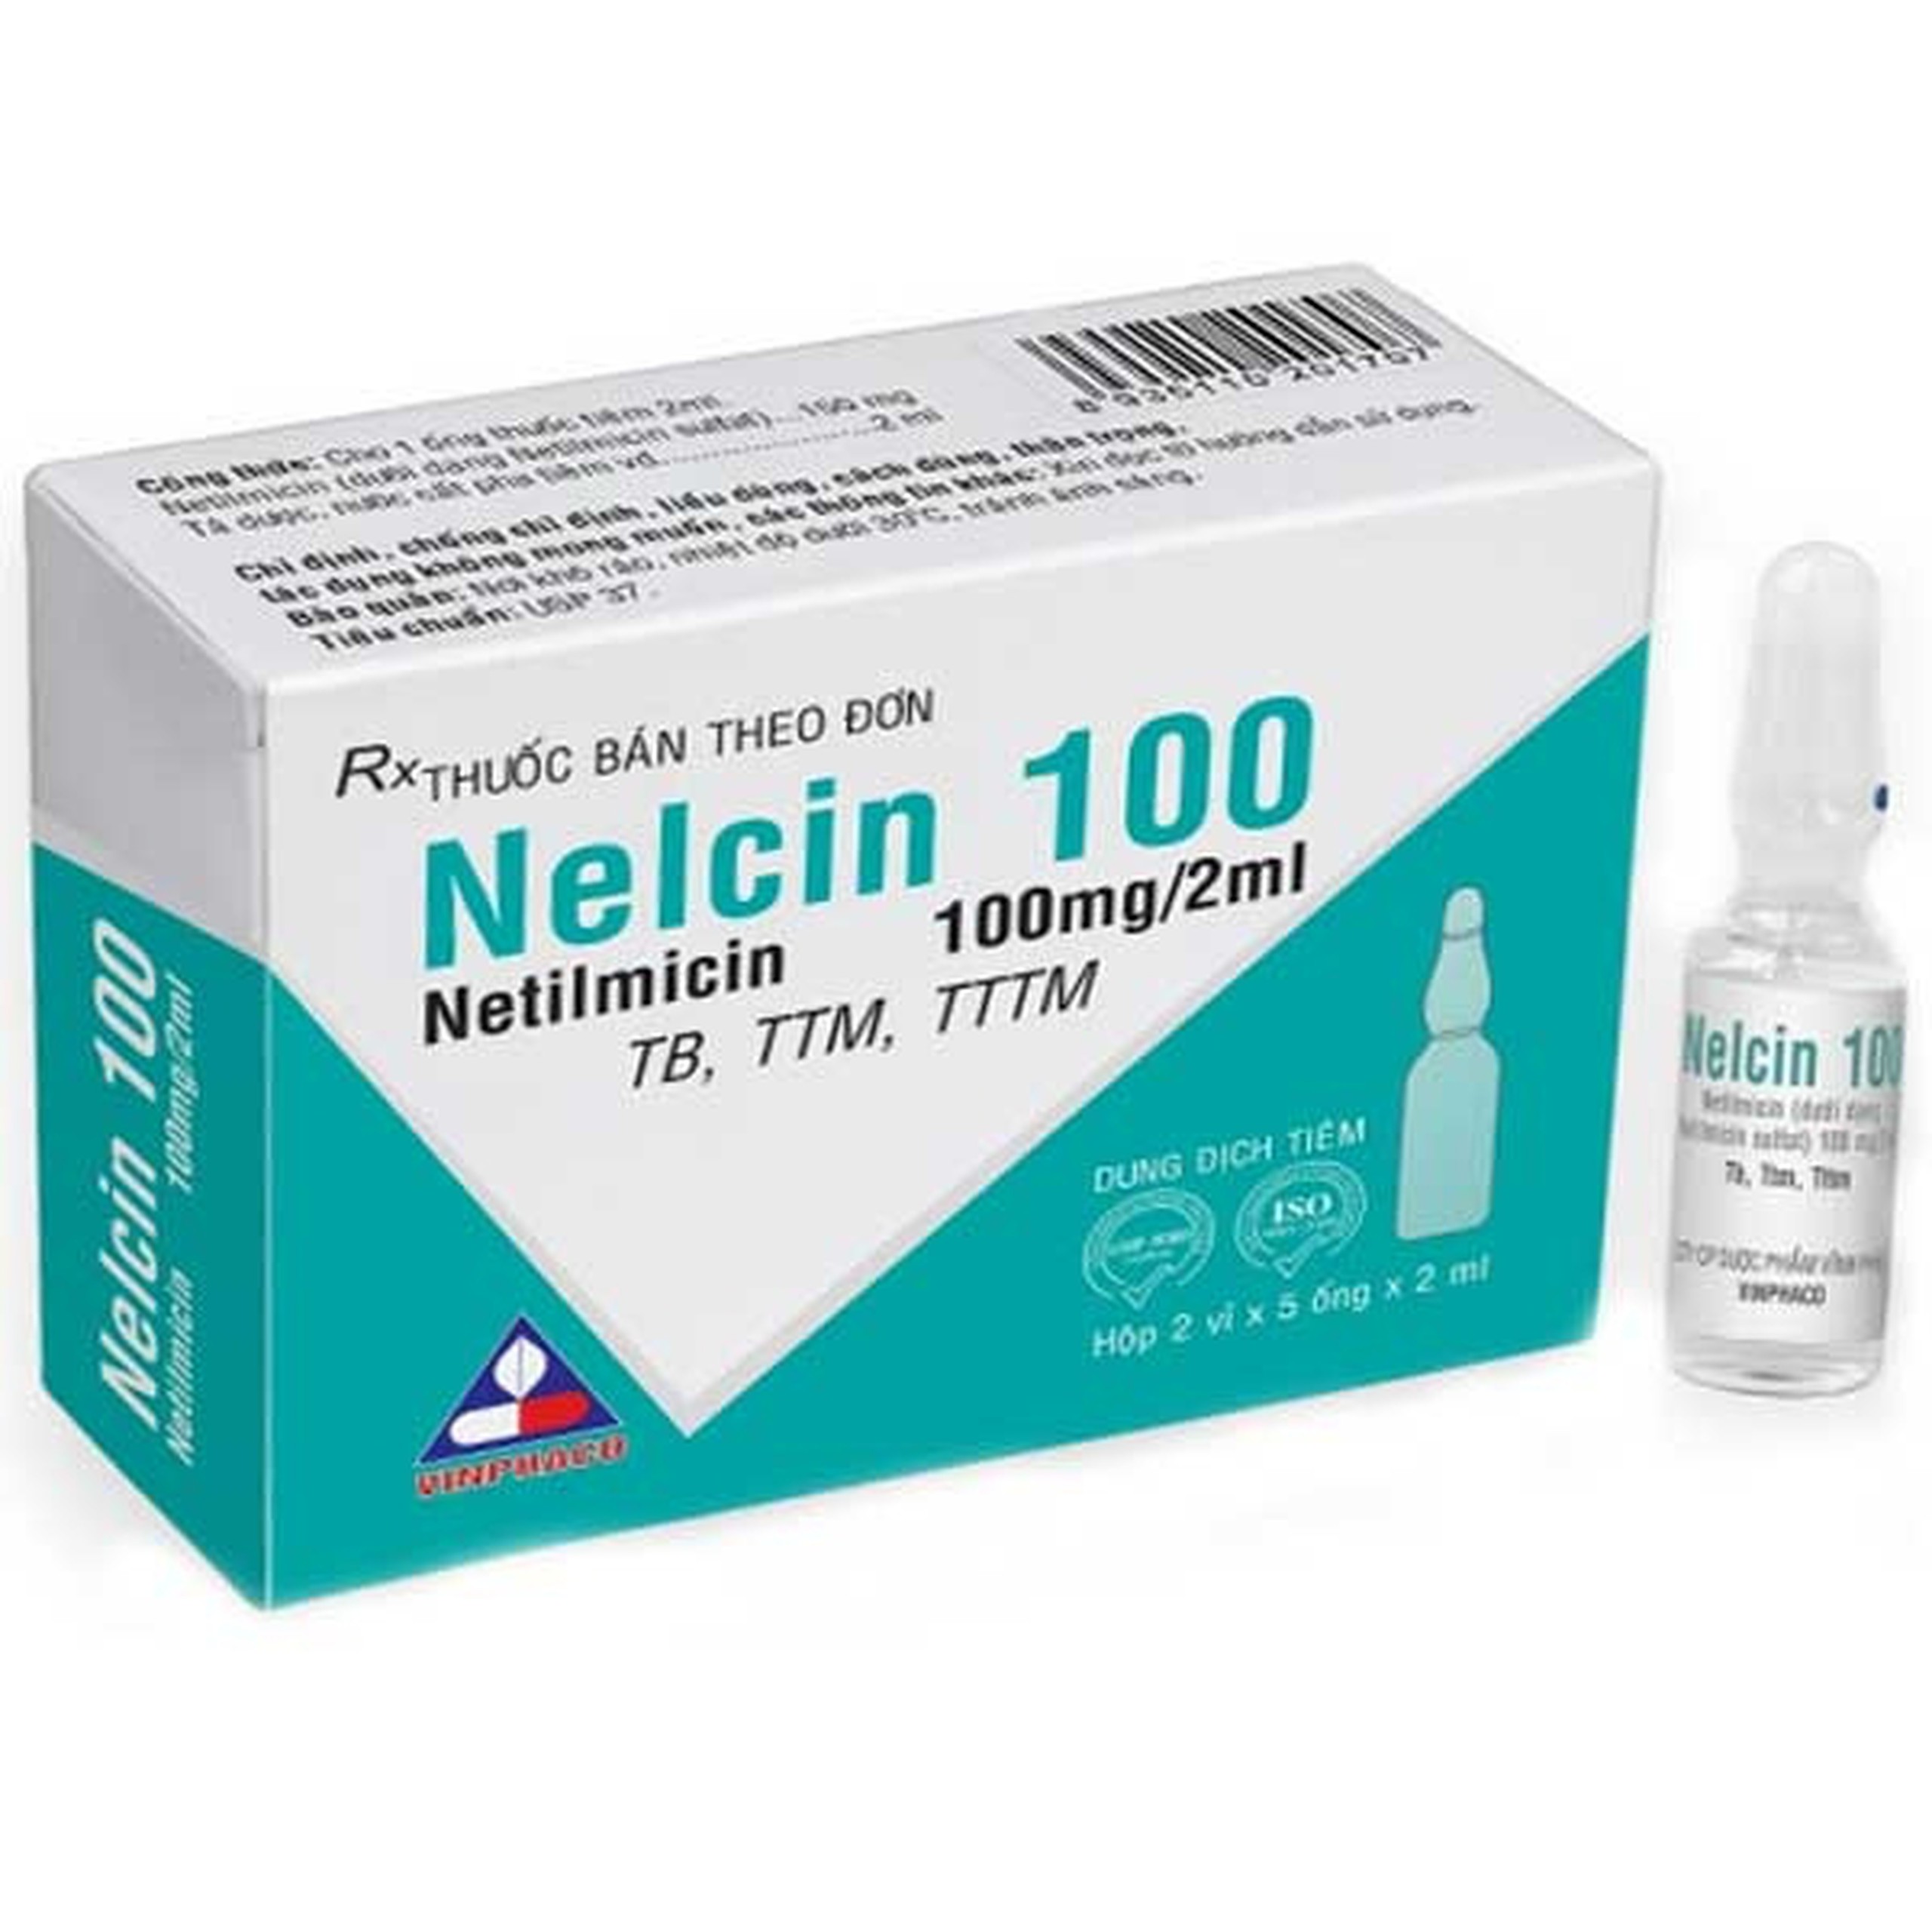 Dung dịch tiêm Nelcin 100 Vinphaco điều trị nhiễm khuẩn nặng (2 vỉ x 5 ống x 2ml)